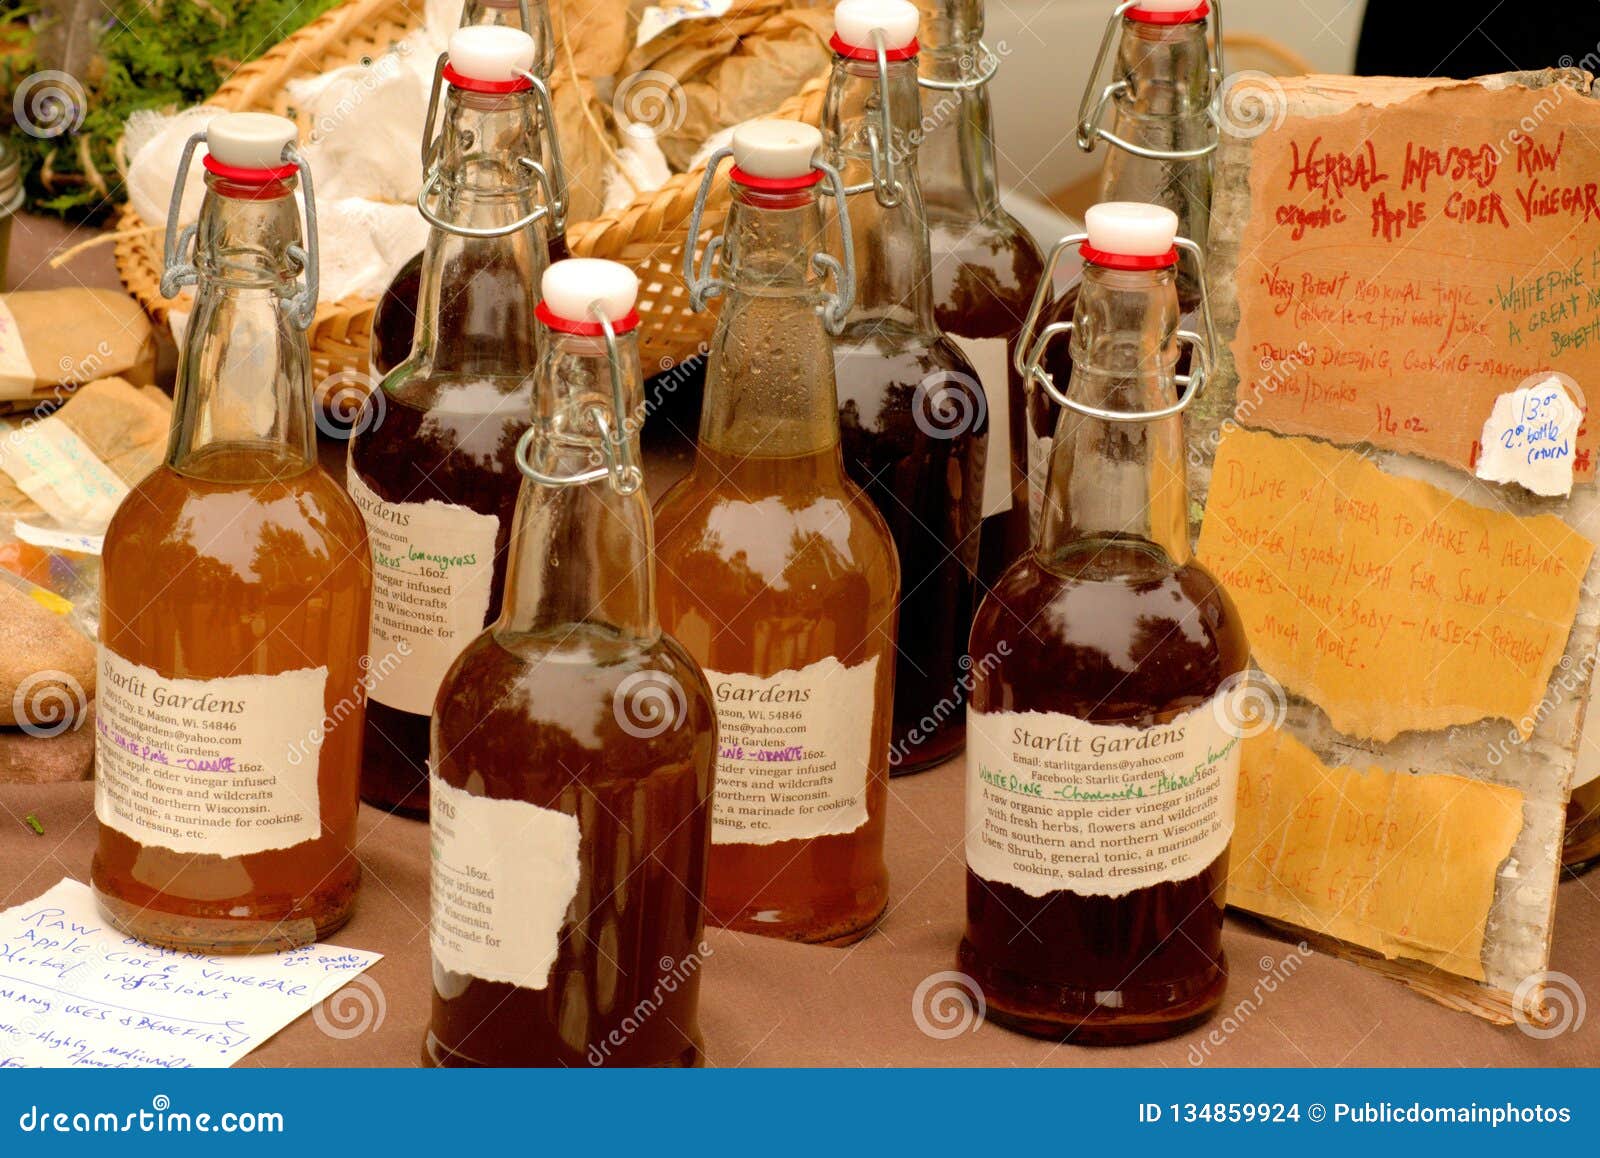 Liqueur, Distilled Beverage, Bottle, Drink Picture. Image: 134859924